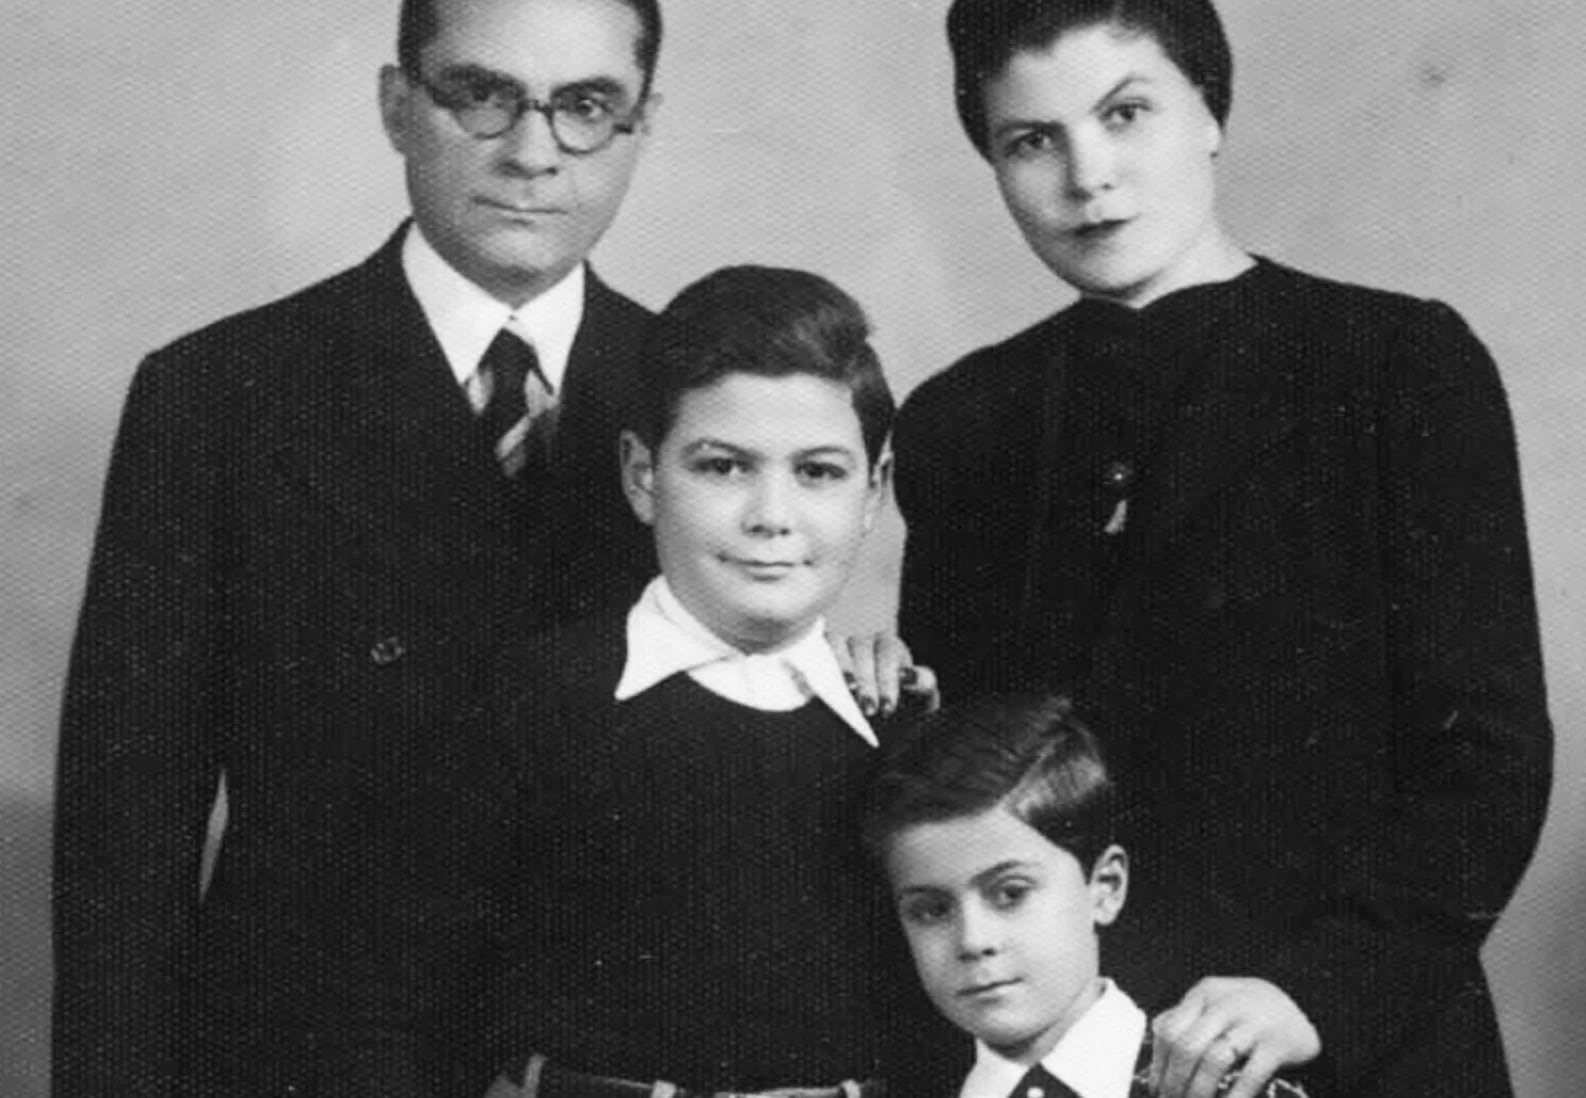 La familia Ángel en Salónica, Grecia, antes de la guerra: Isaac, Ida y sus dos hijos, de los que sólo sobrevivió el mayor. (Yad Vashem)